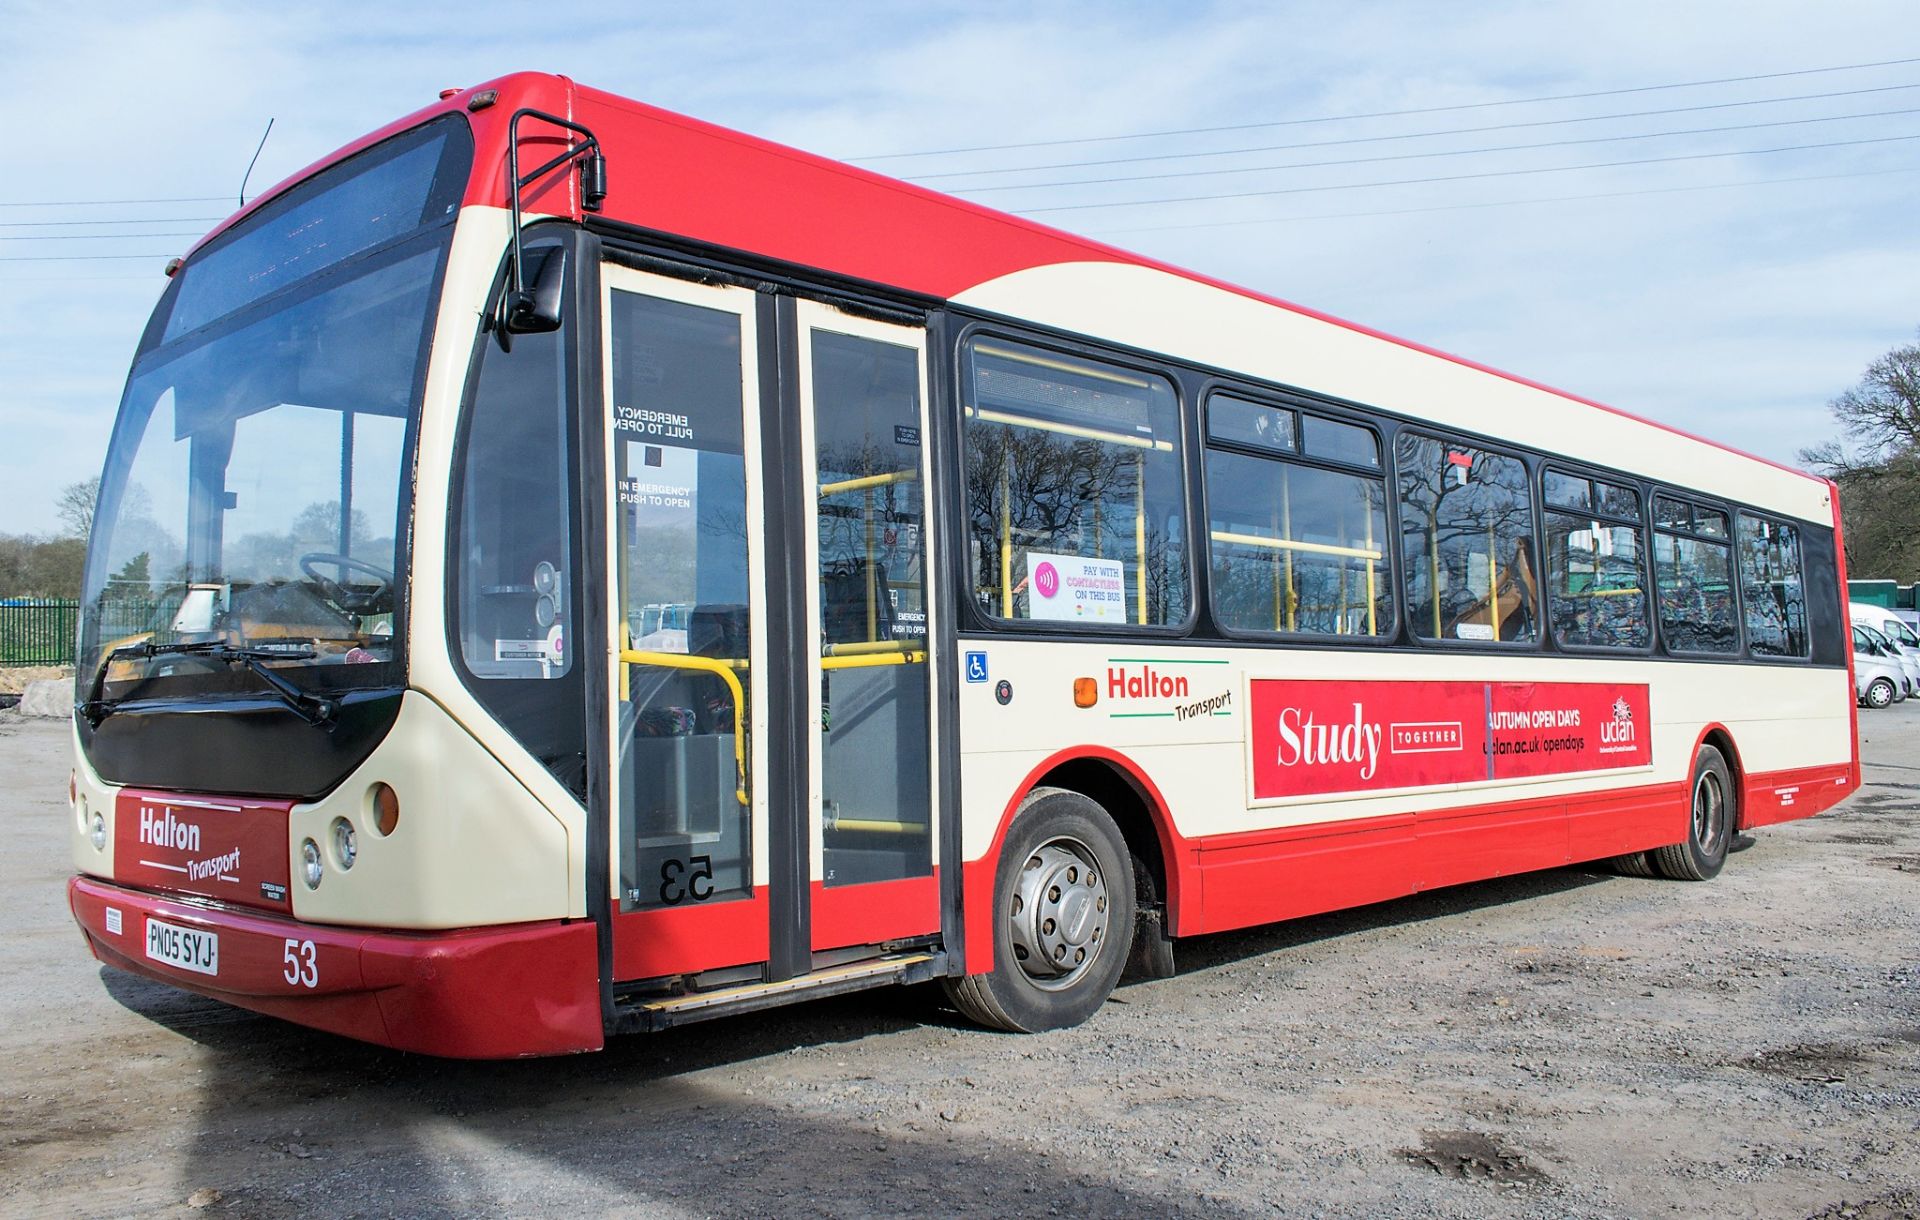 Dennis Super Dart 43 seat single deck service bus Registration Number: PN05 SYJ Date of